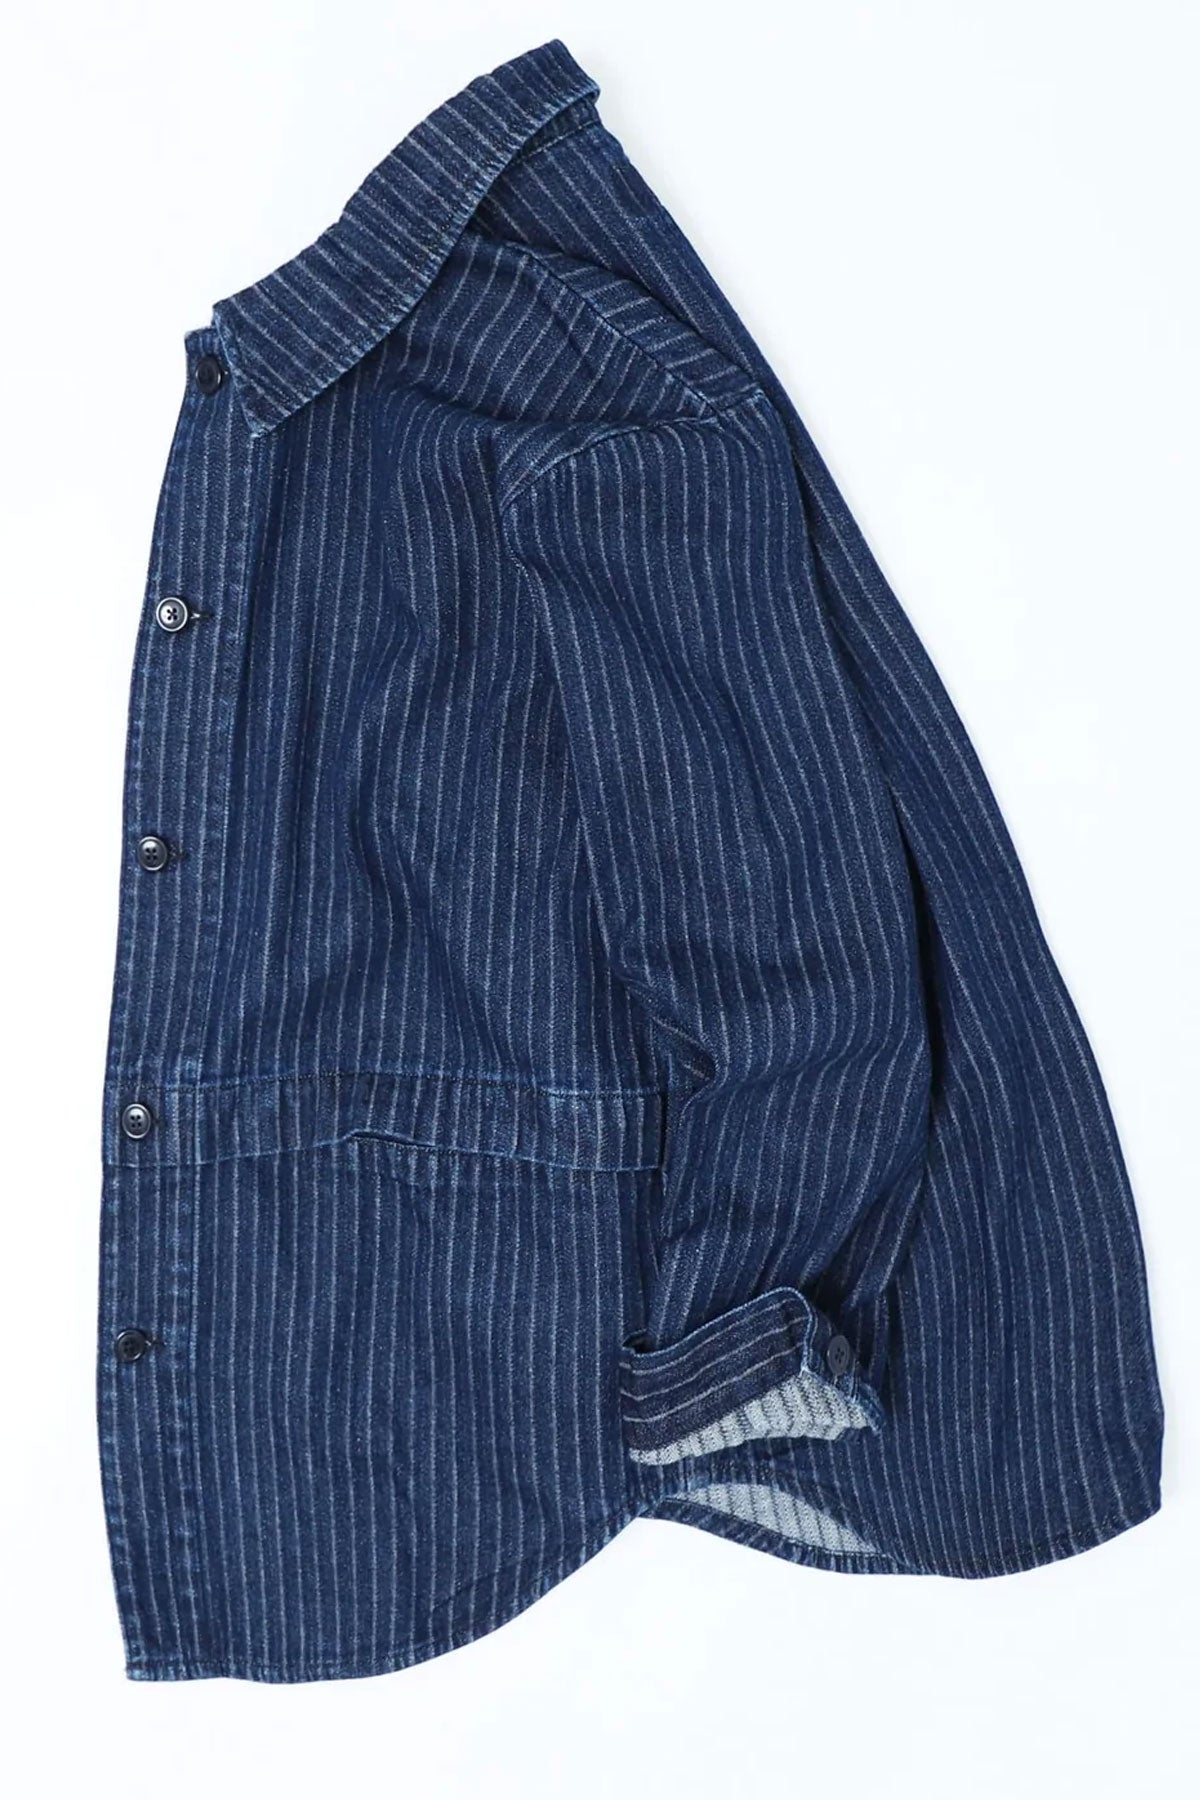 Workware - Indigo Worker Jacket Mod #537 - Stripe